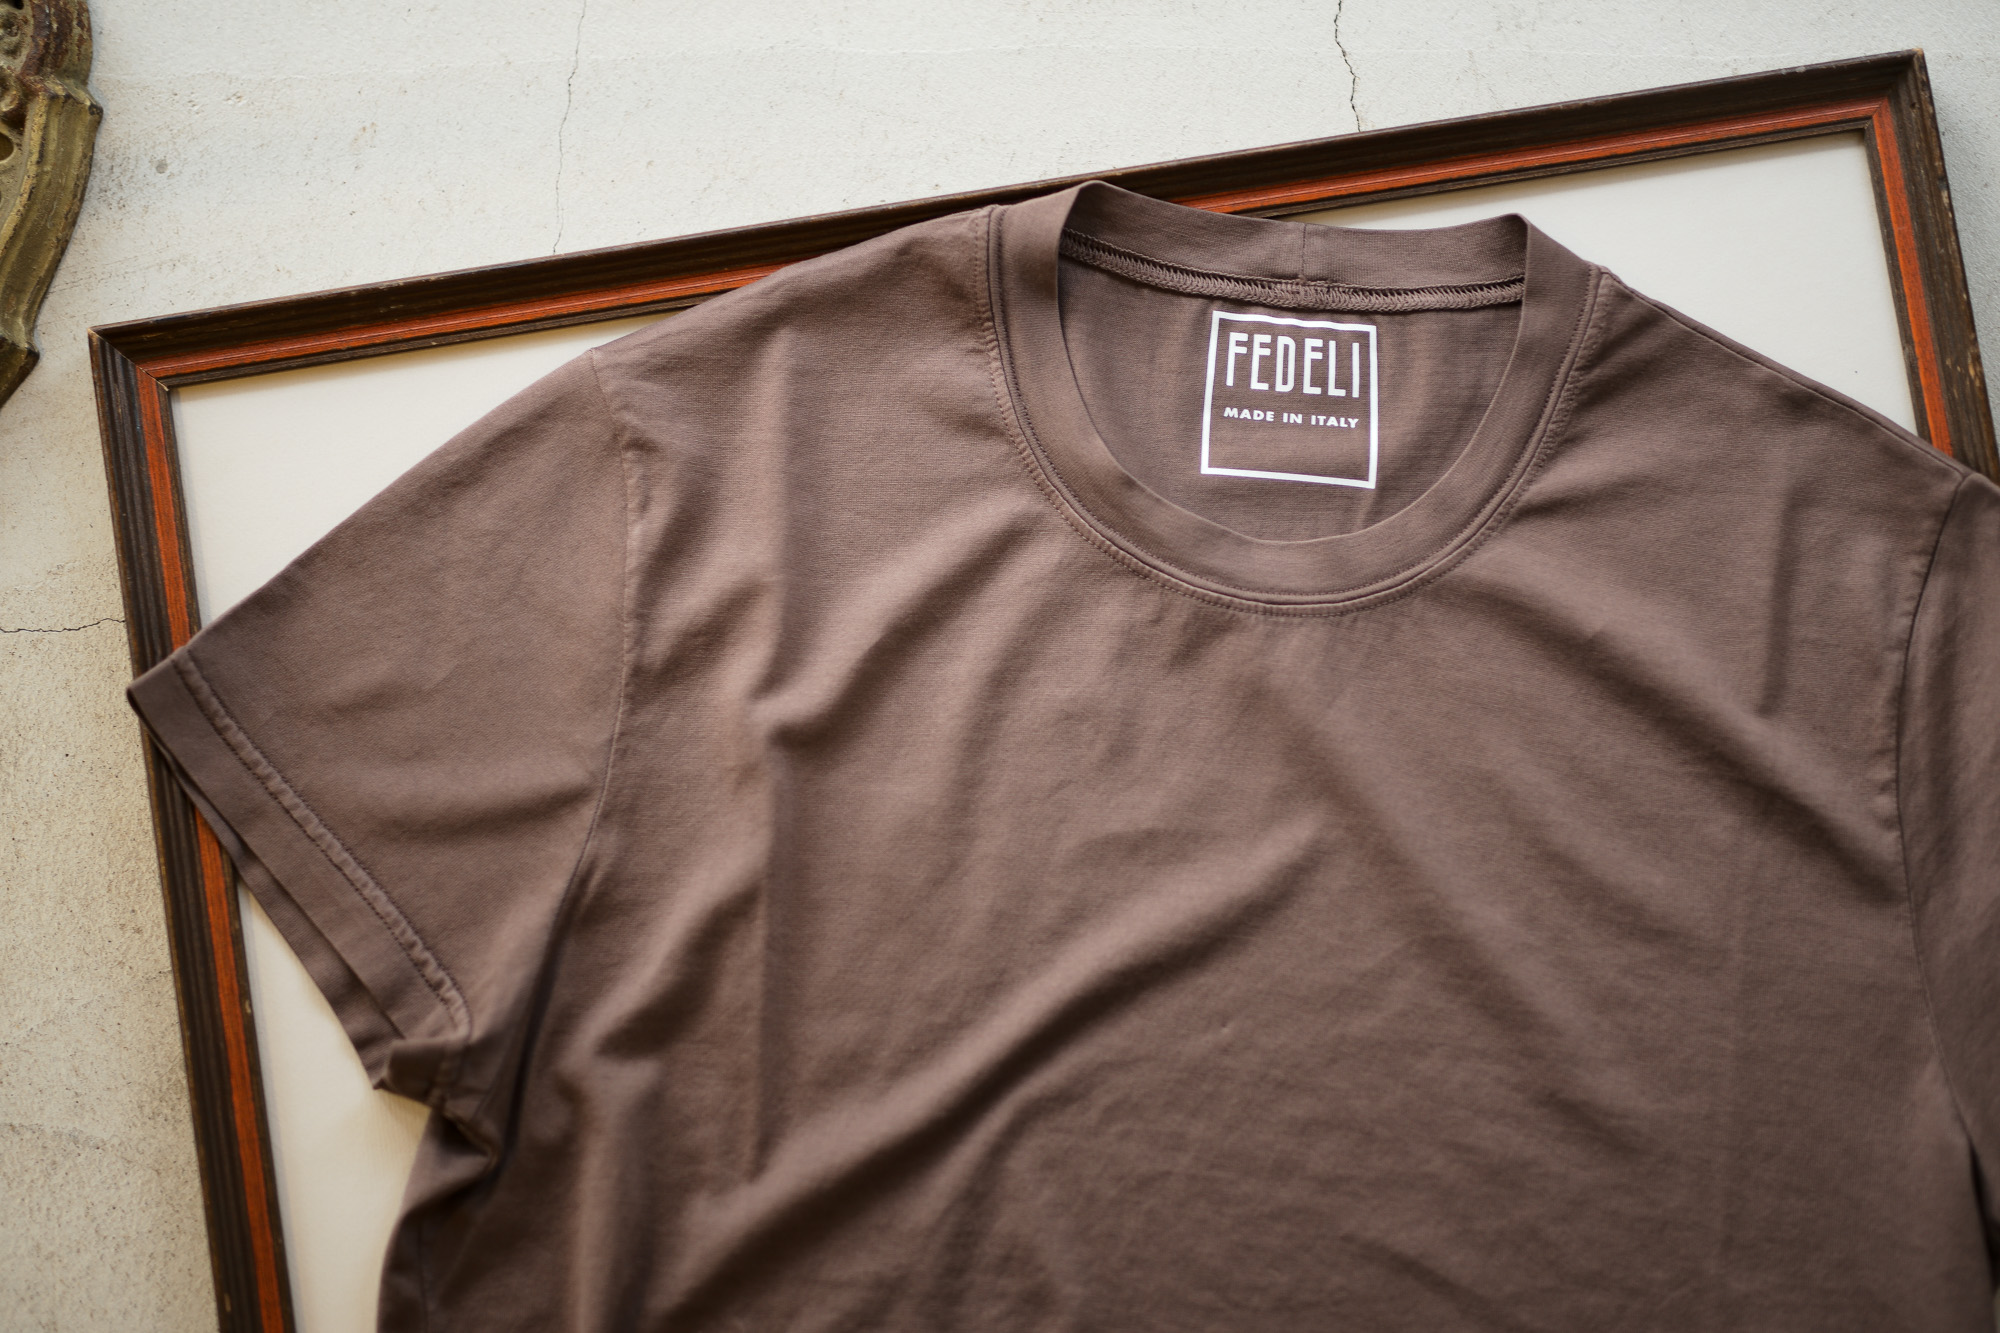 FEDELI (フェデーリ) Crew Neck T-shirt (クルーネック Tシャツ) ギザコットン Tシャツ BROWN (ブラウン